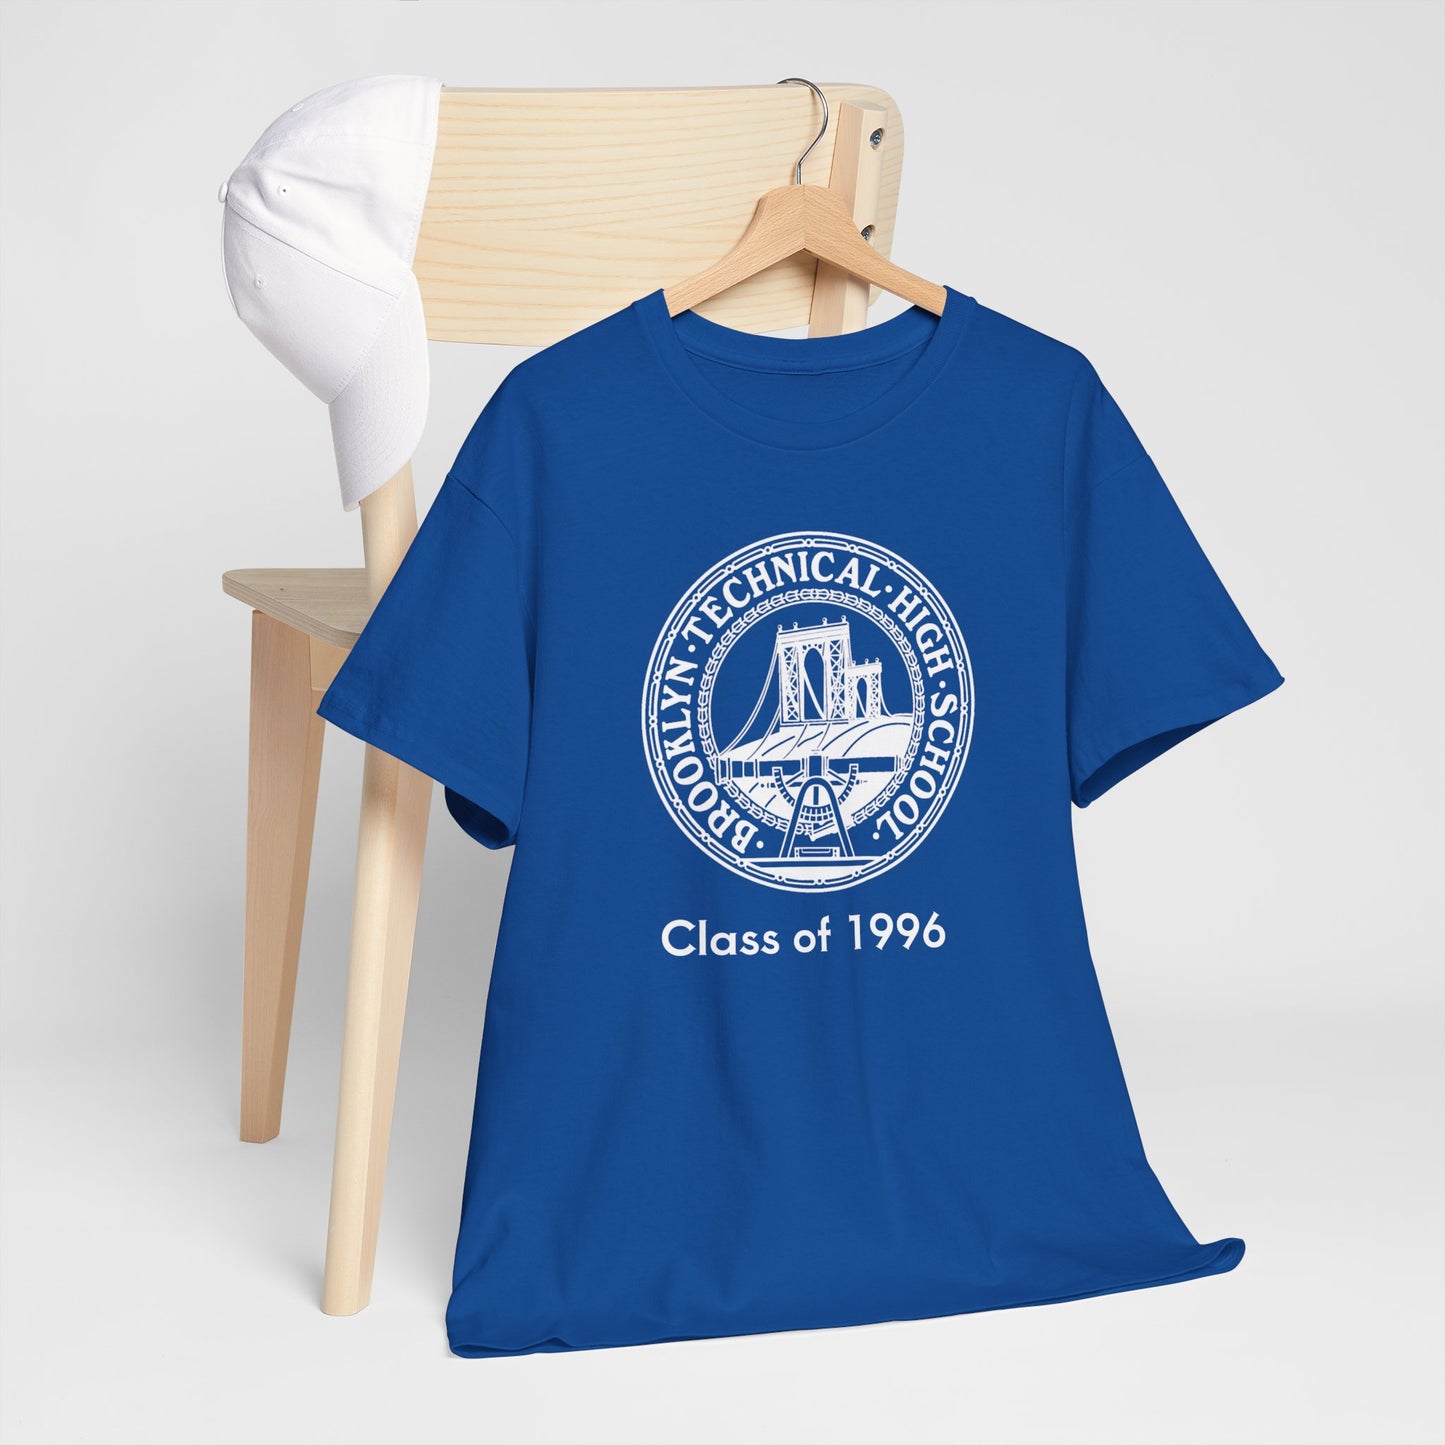 Classic Tech Seal - Men's Heavy Cotton T-Shirt - Class Of 1996